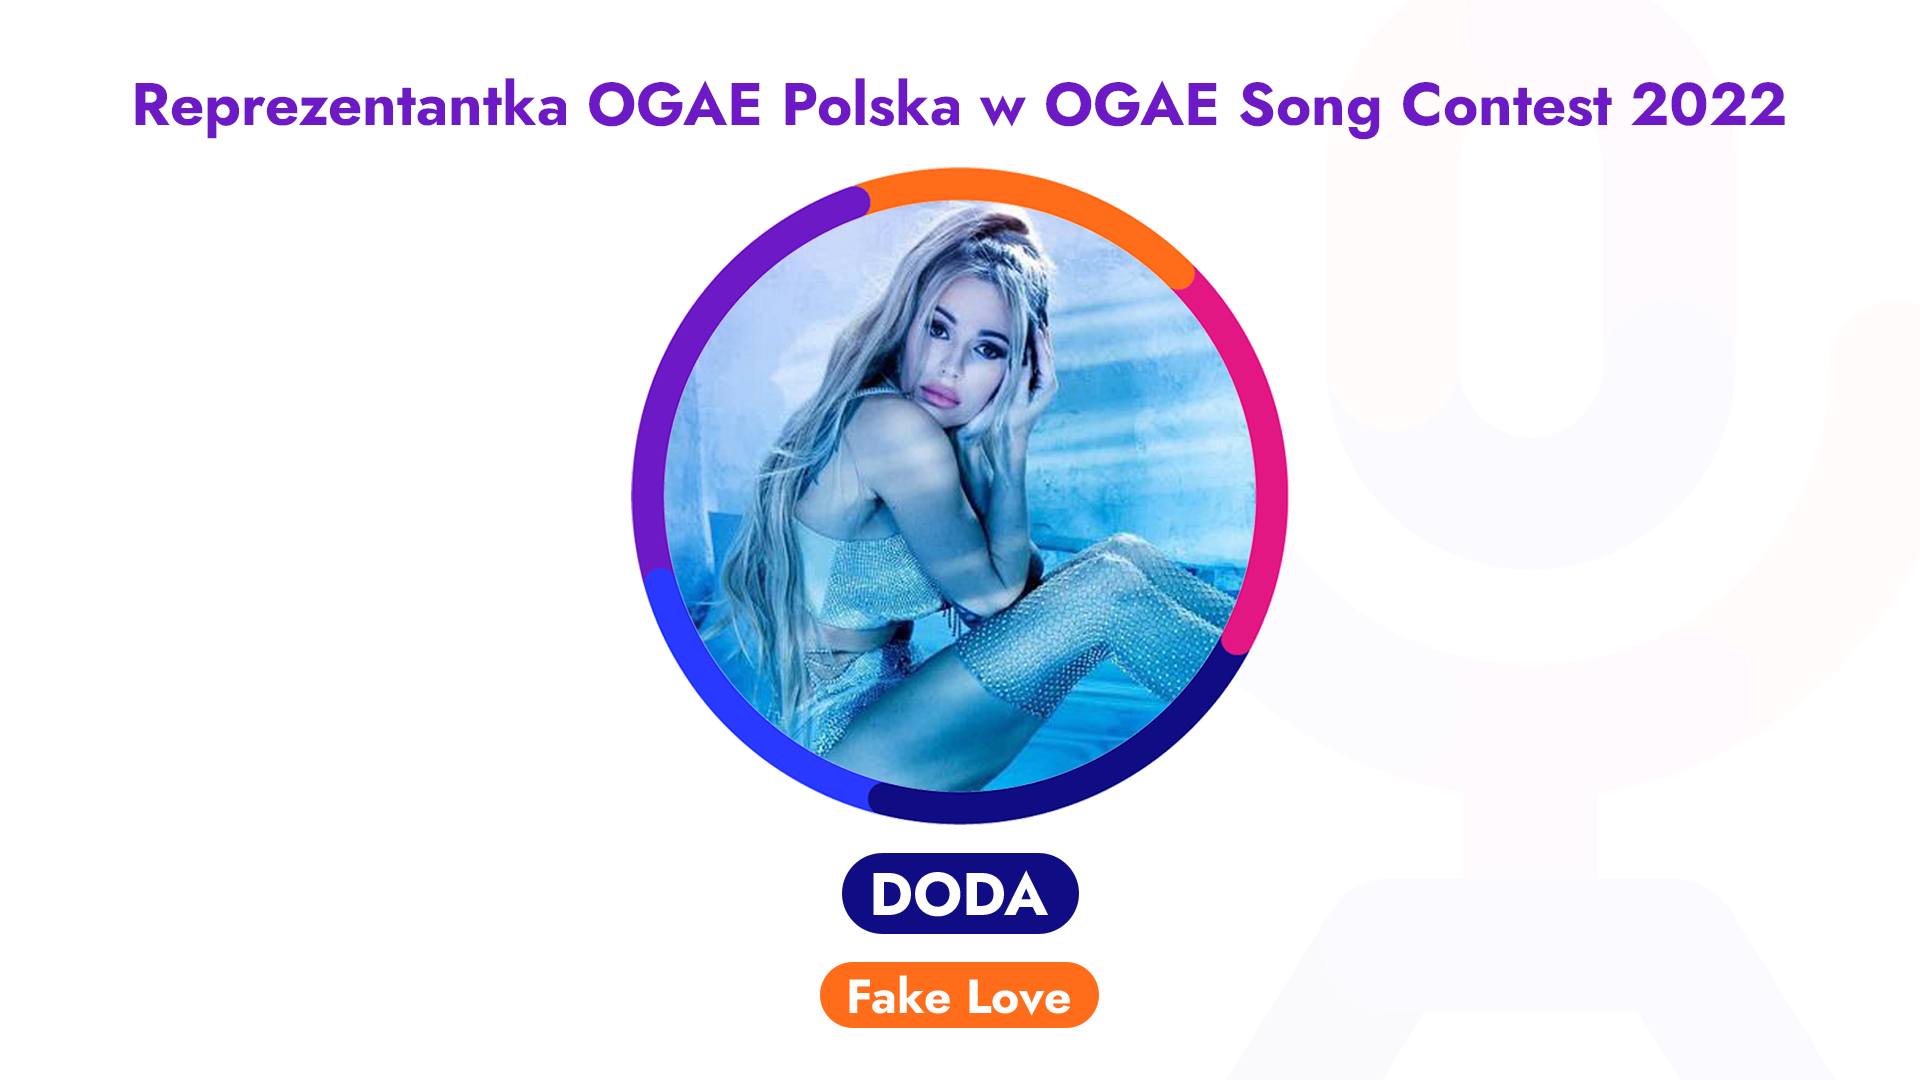 Doda, OGAE Song Contest, Eurowizja, Fake Love